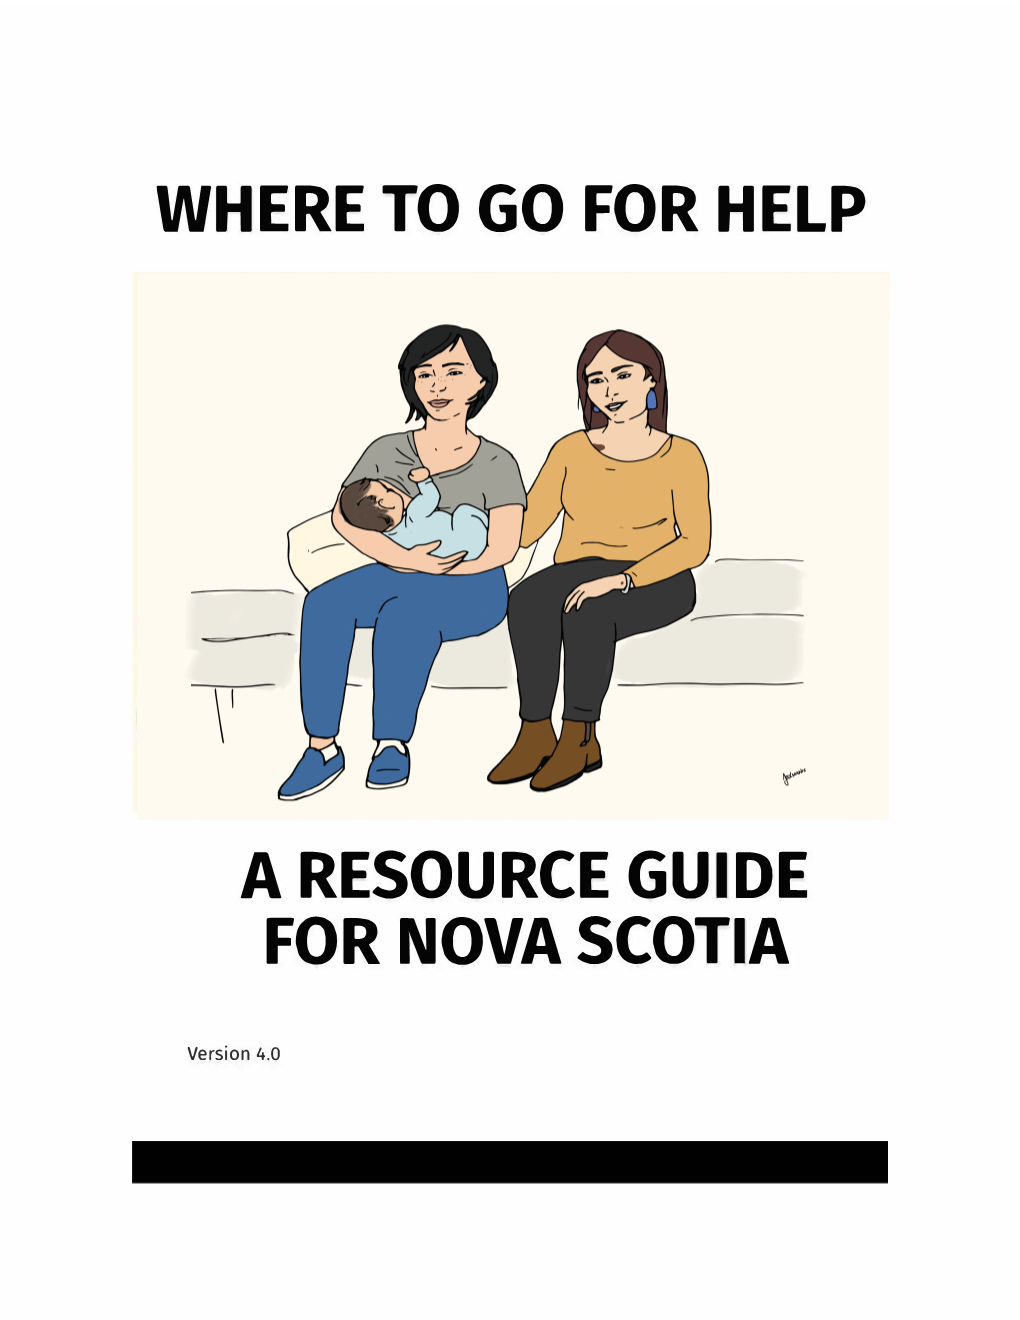 Where to Go for Help a Resource Guide for Nova Scotia